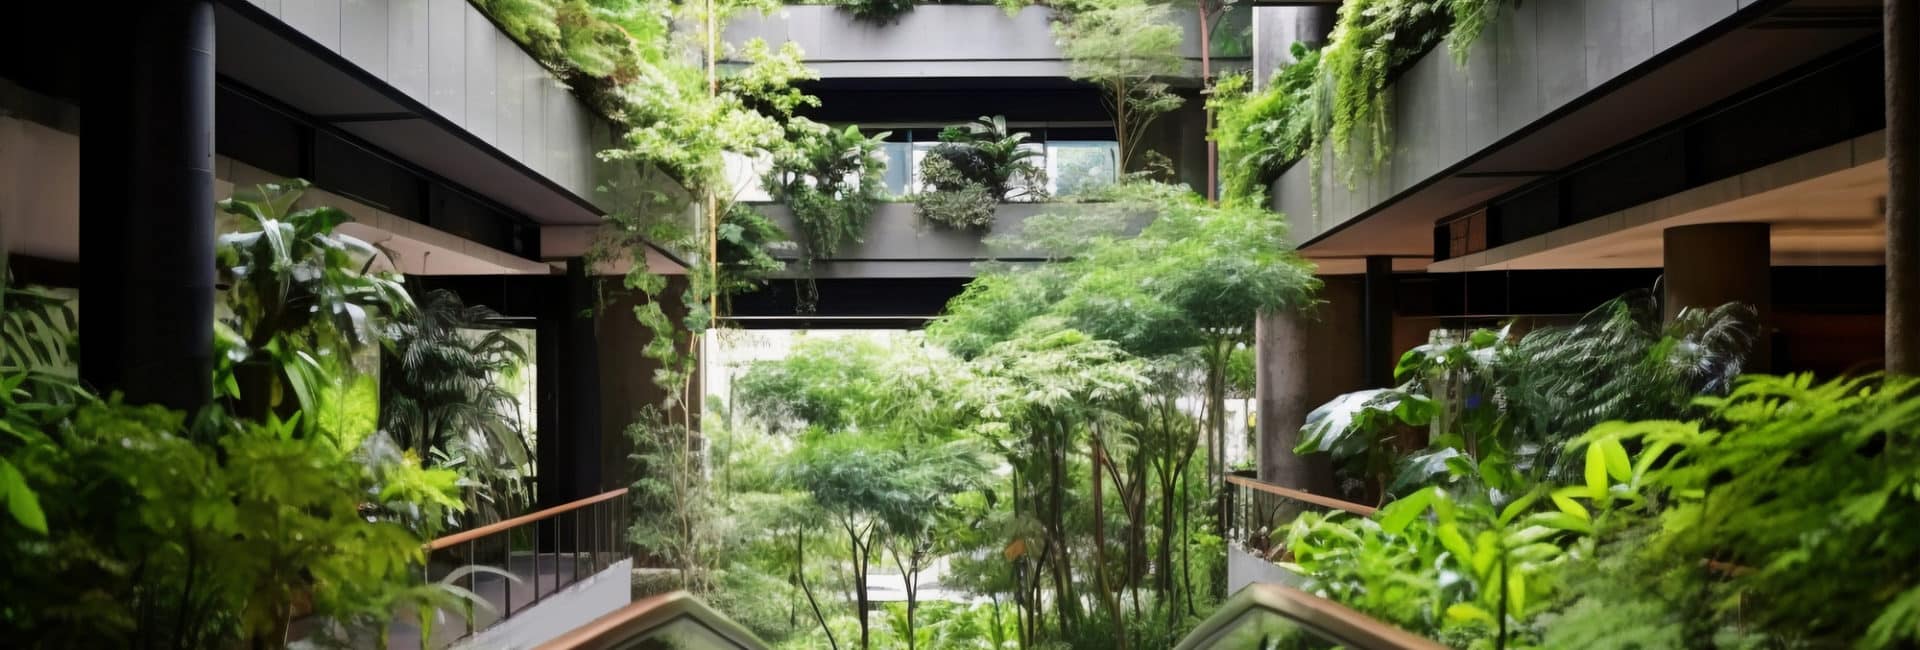 Imagem de um prédio cheio de jardin e plantas, para simbolizar o design biofílico